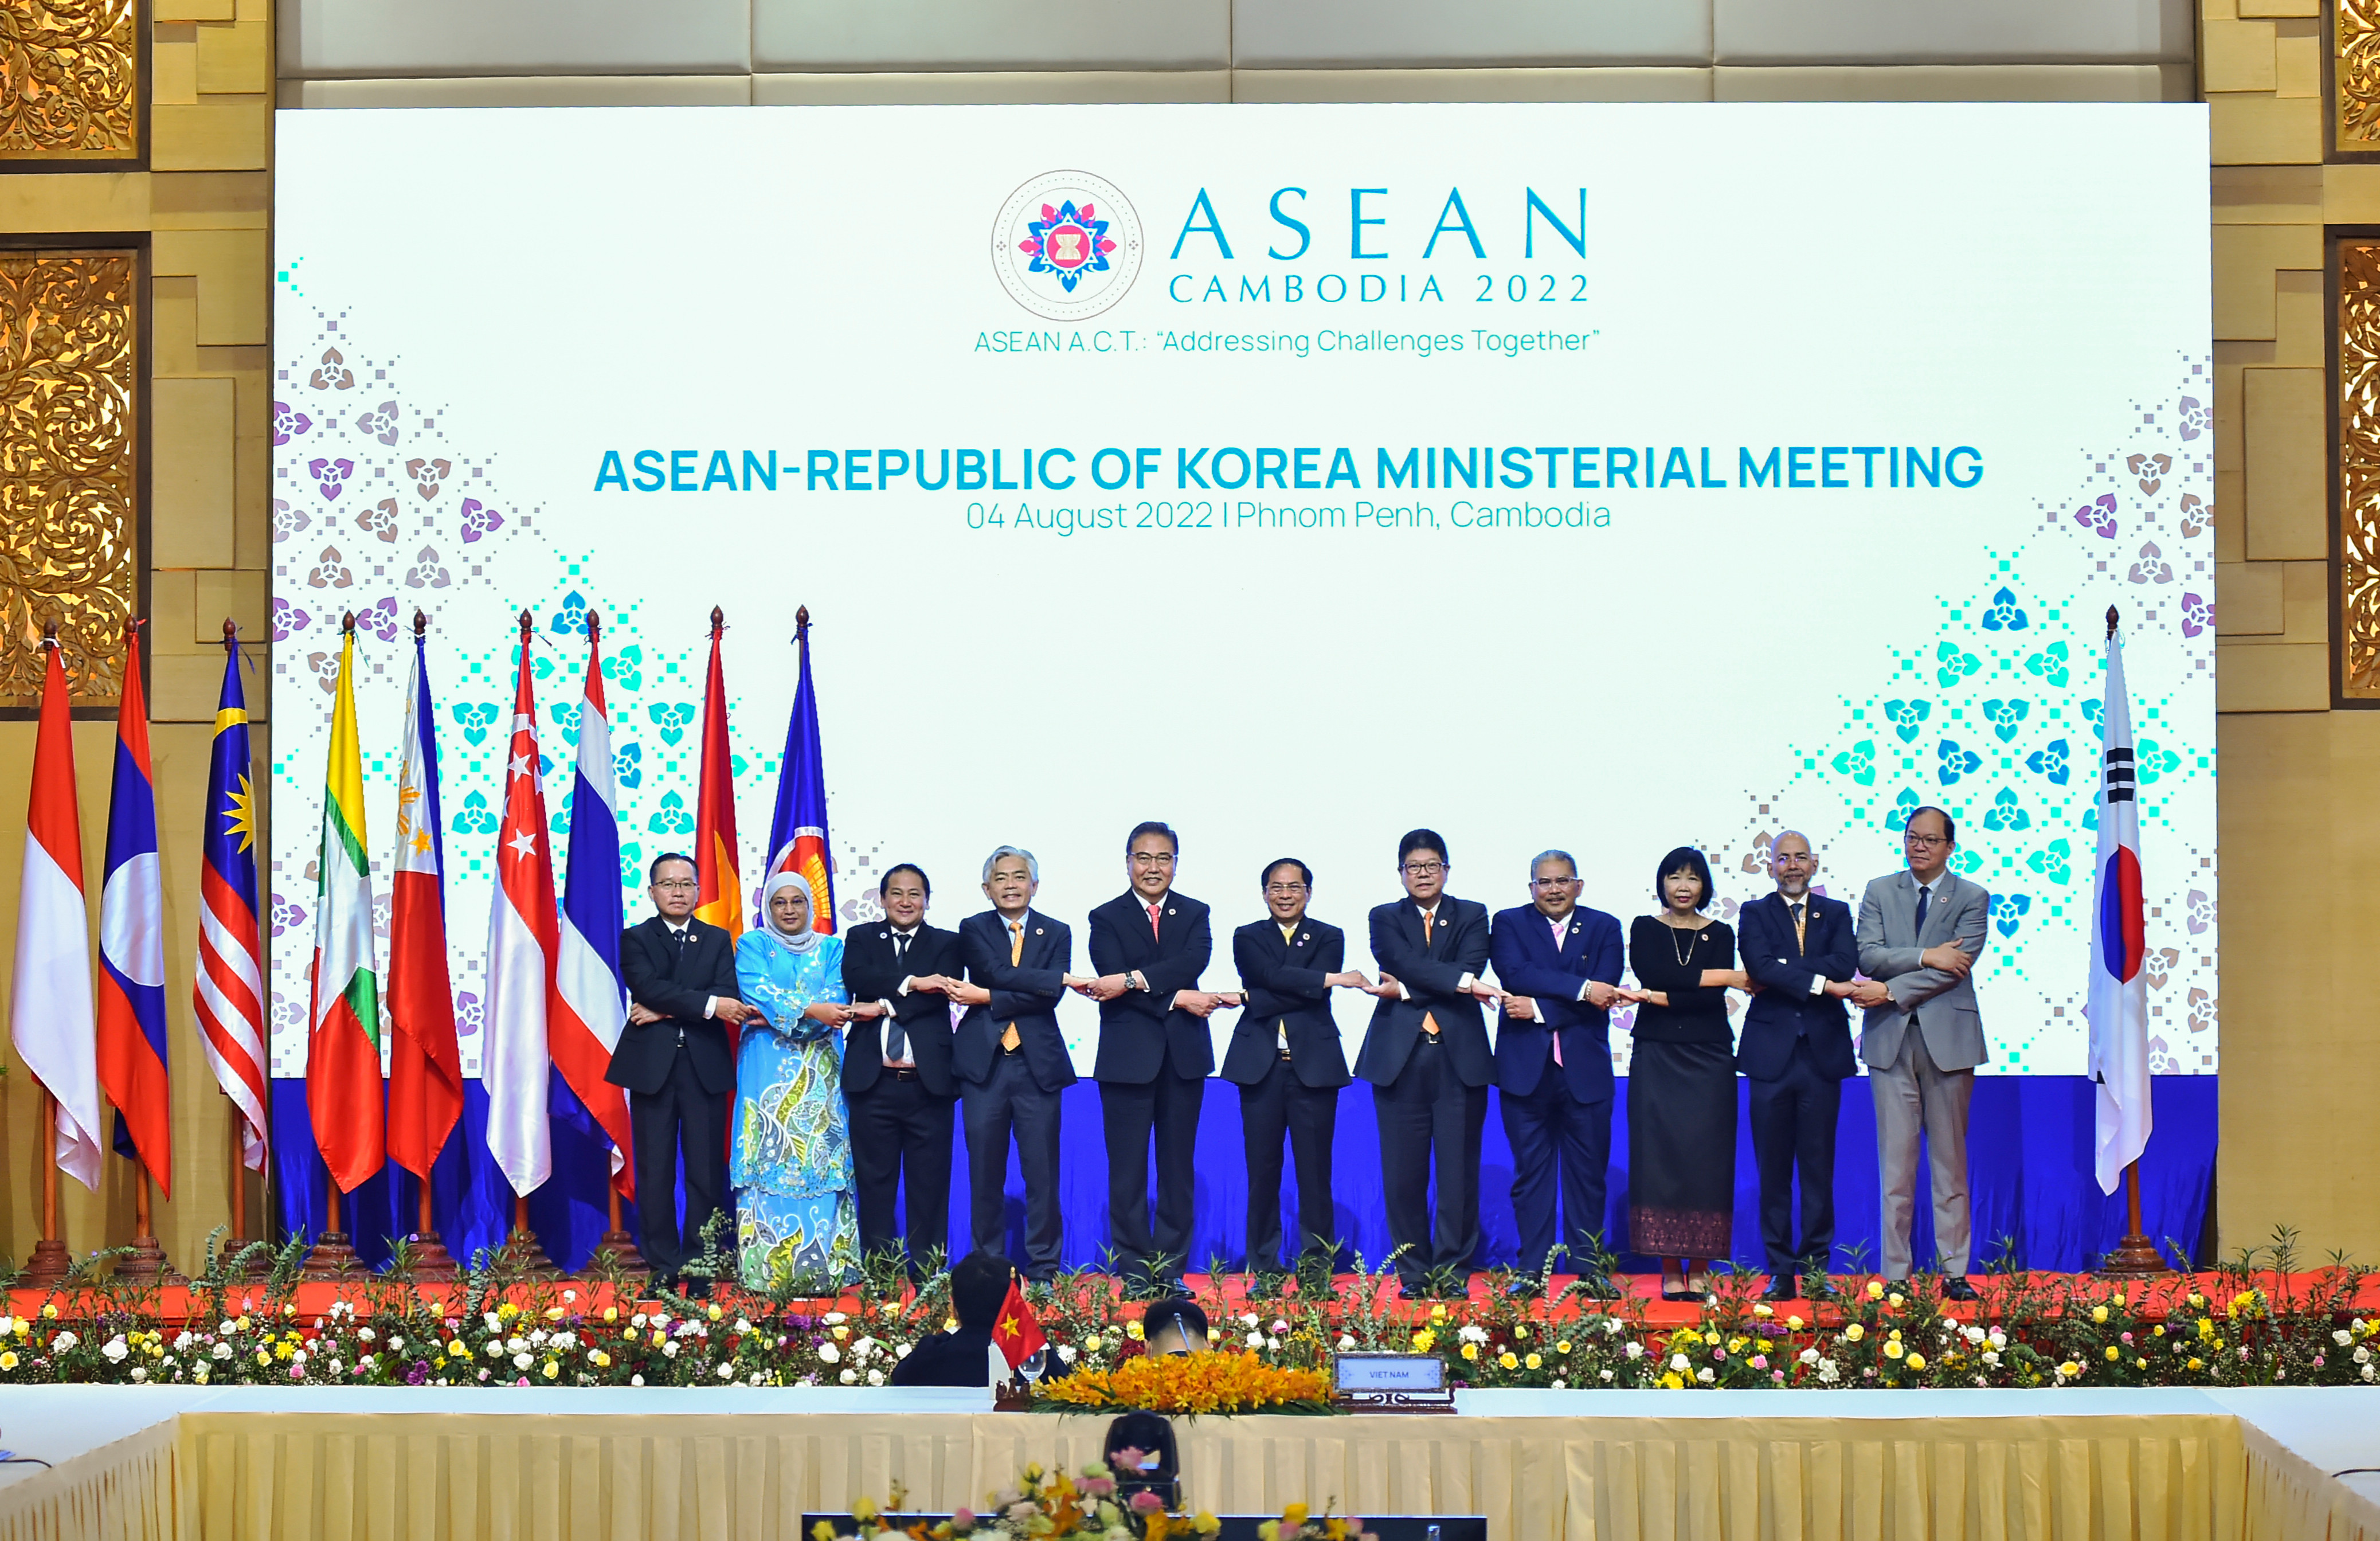 Các Hội nghị Bộ trưởng Ngoại giao ASEAN với các đối tác